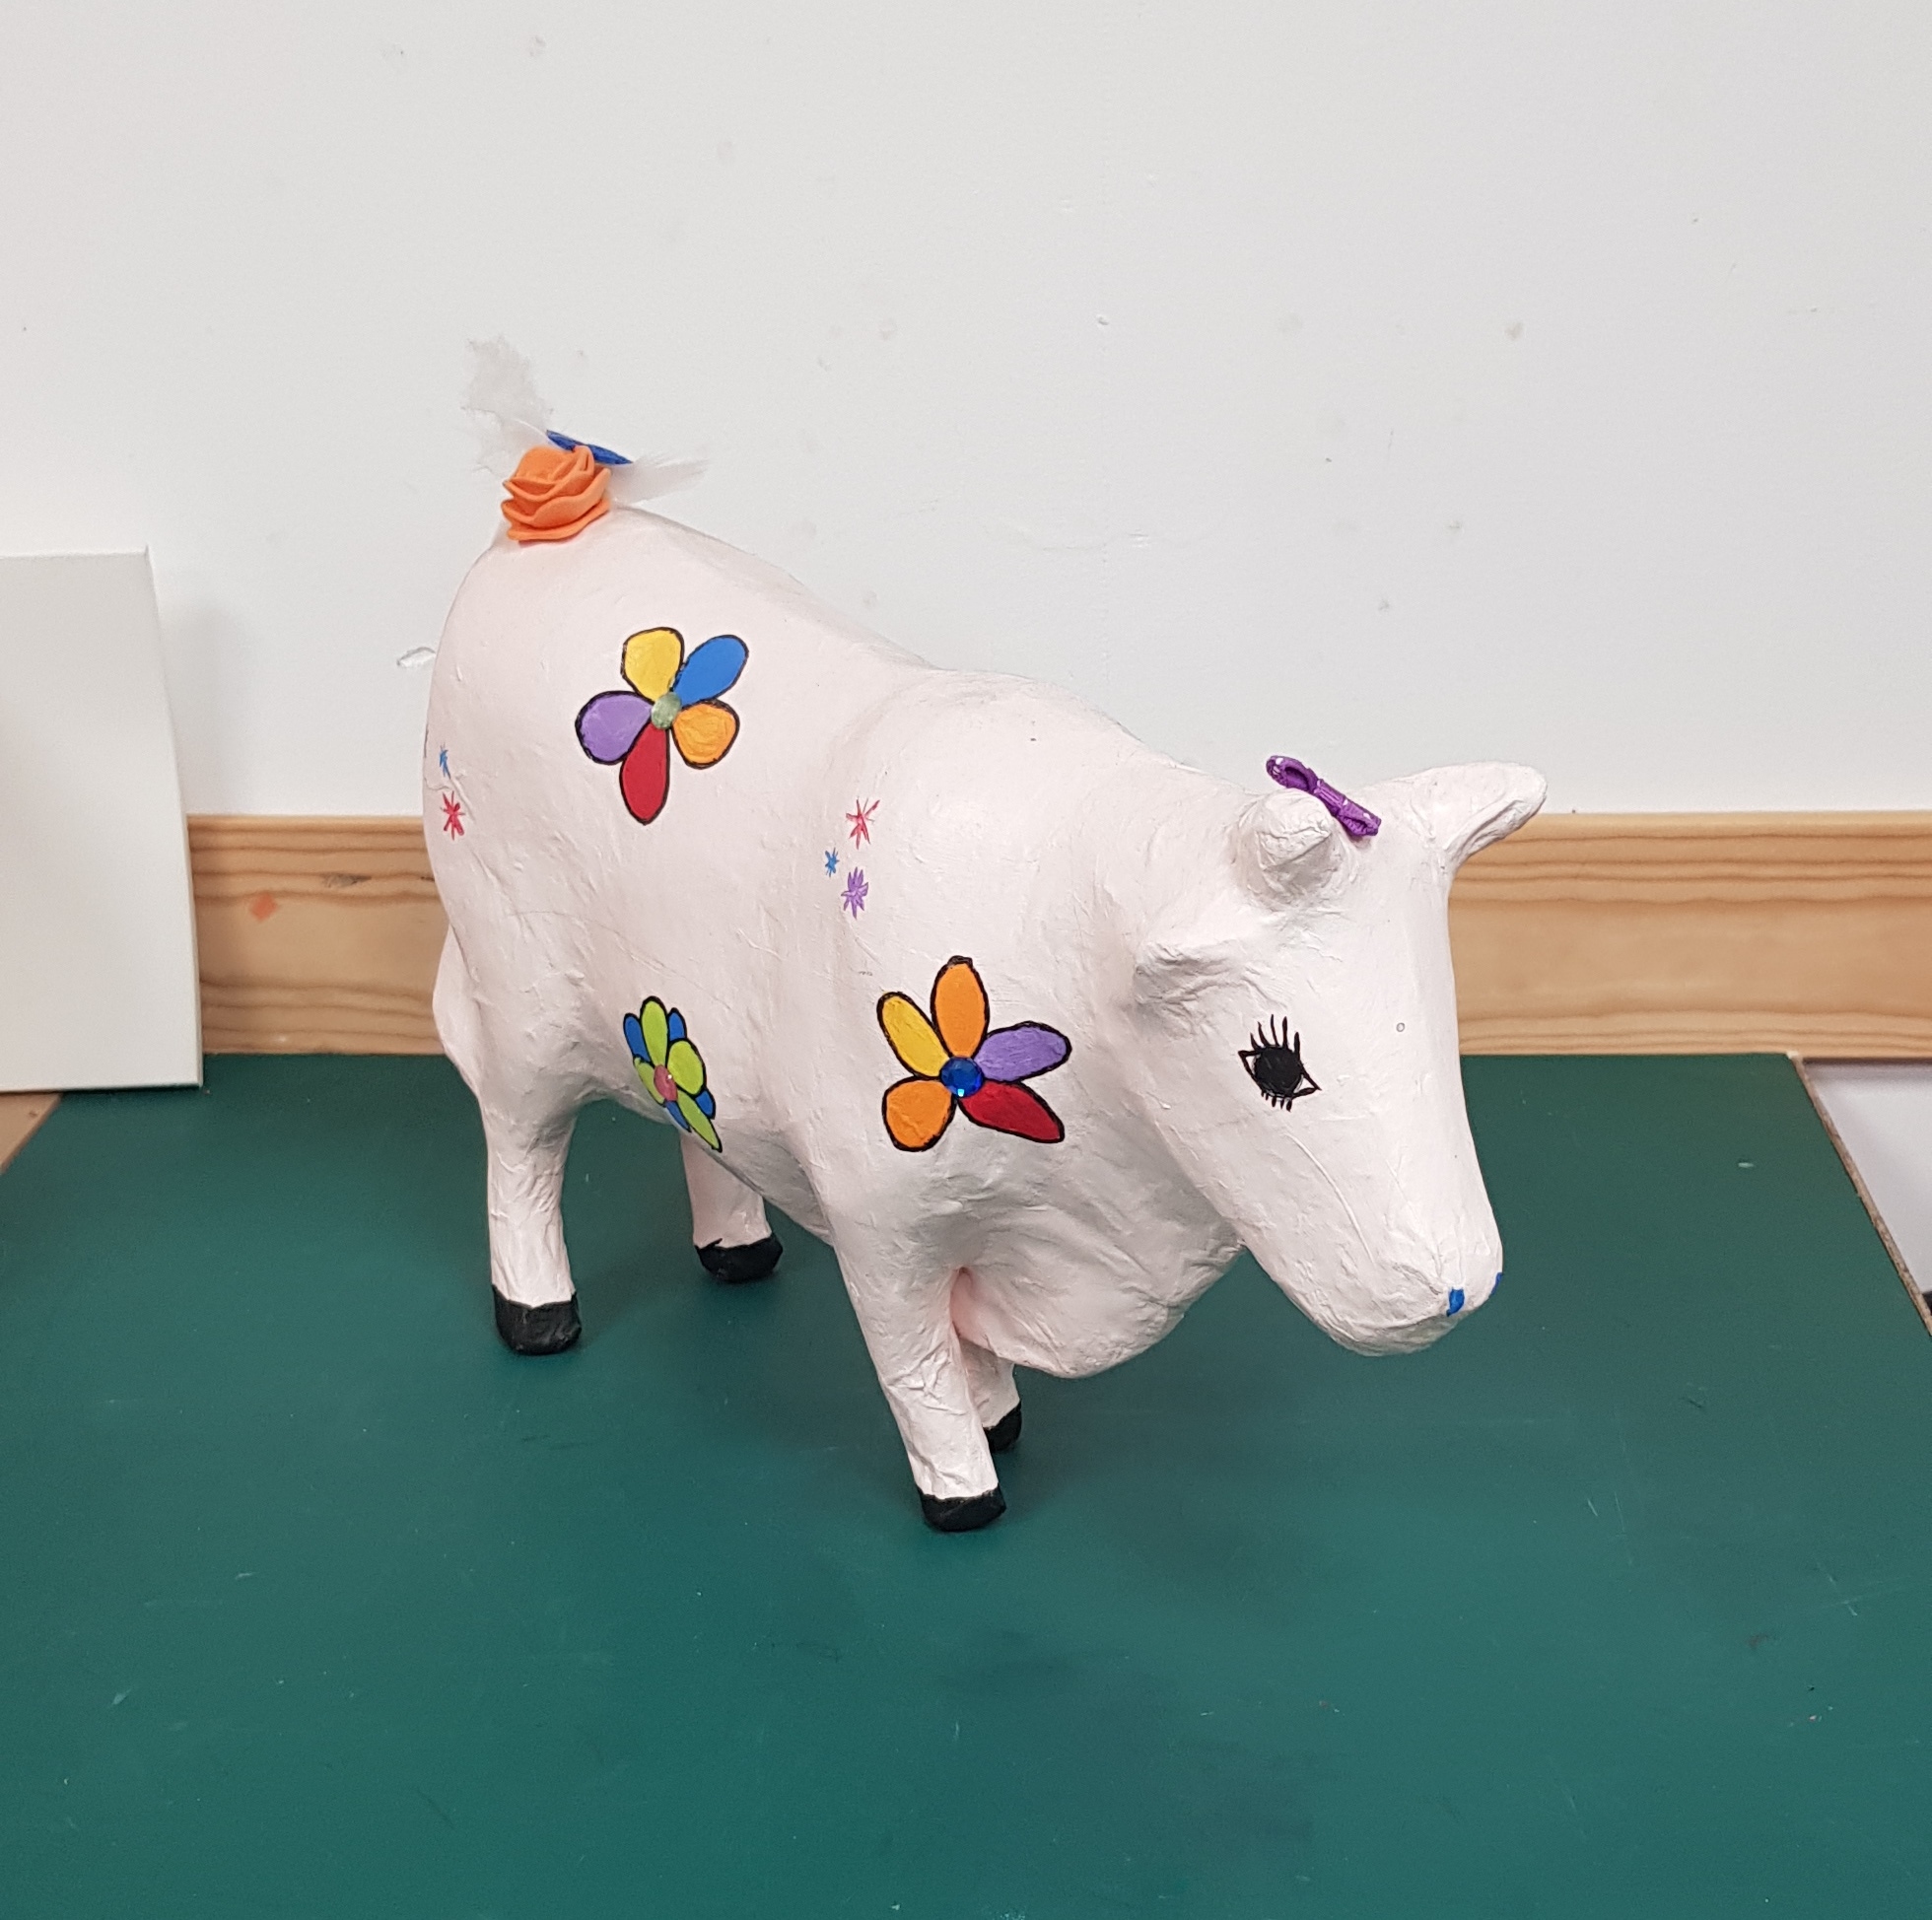 Workshop Animal Fun | Koe schilderen | Pimp een koe